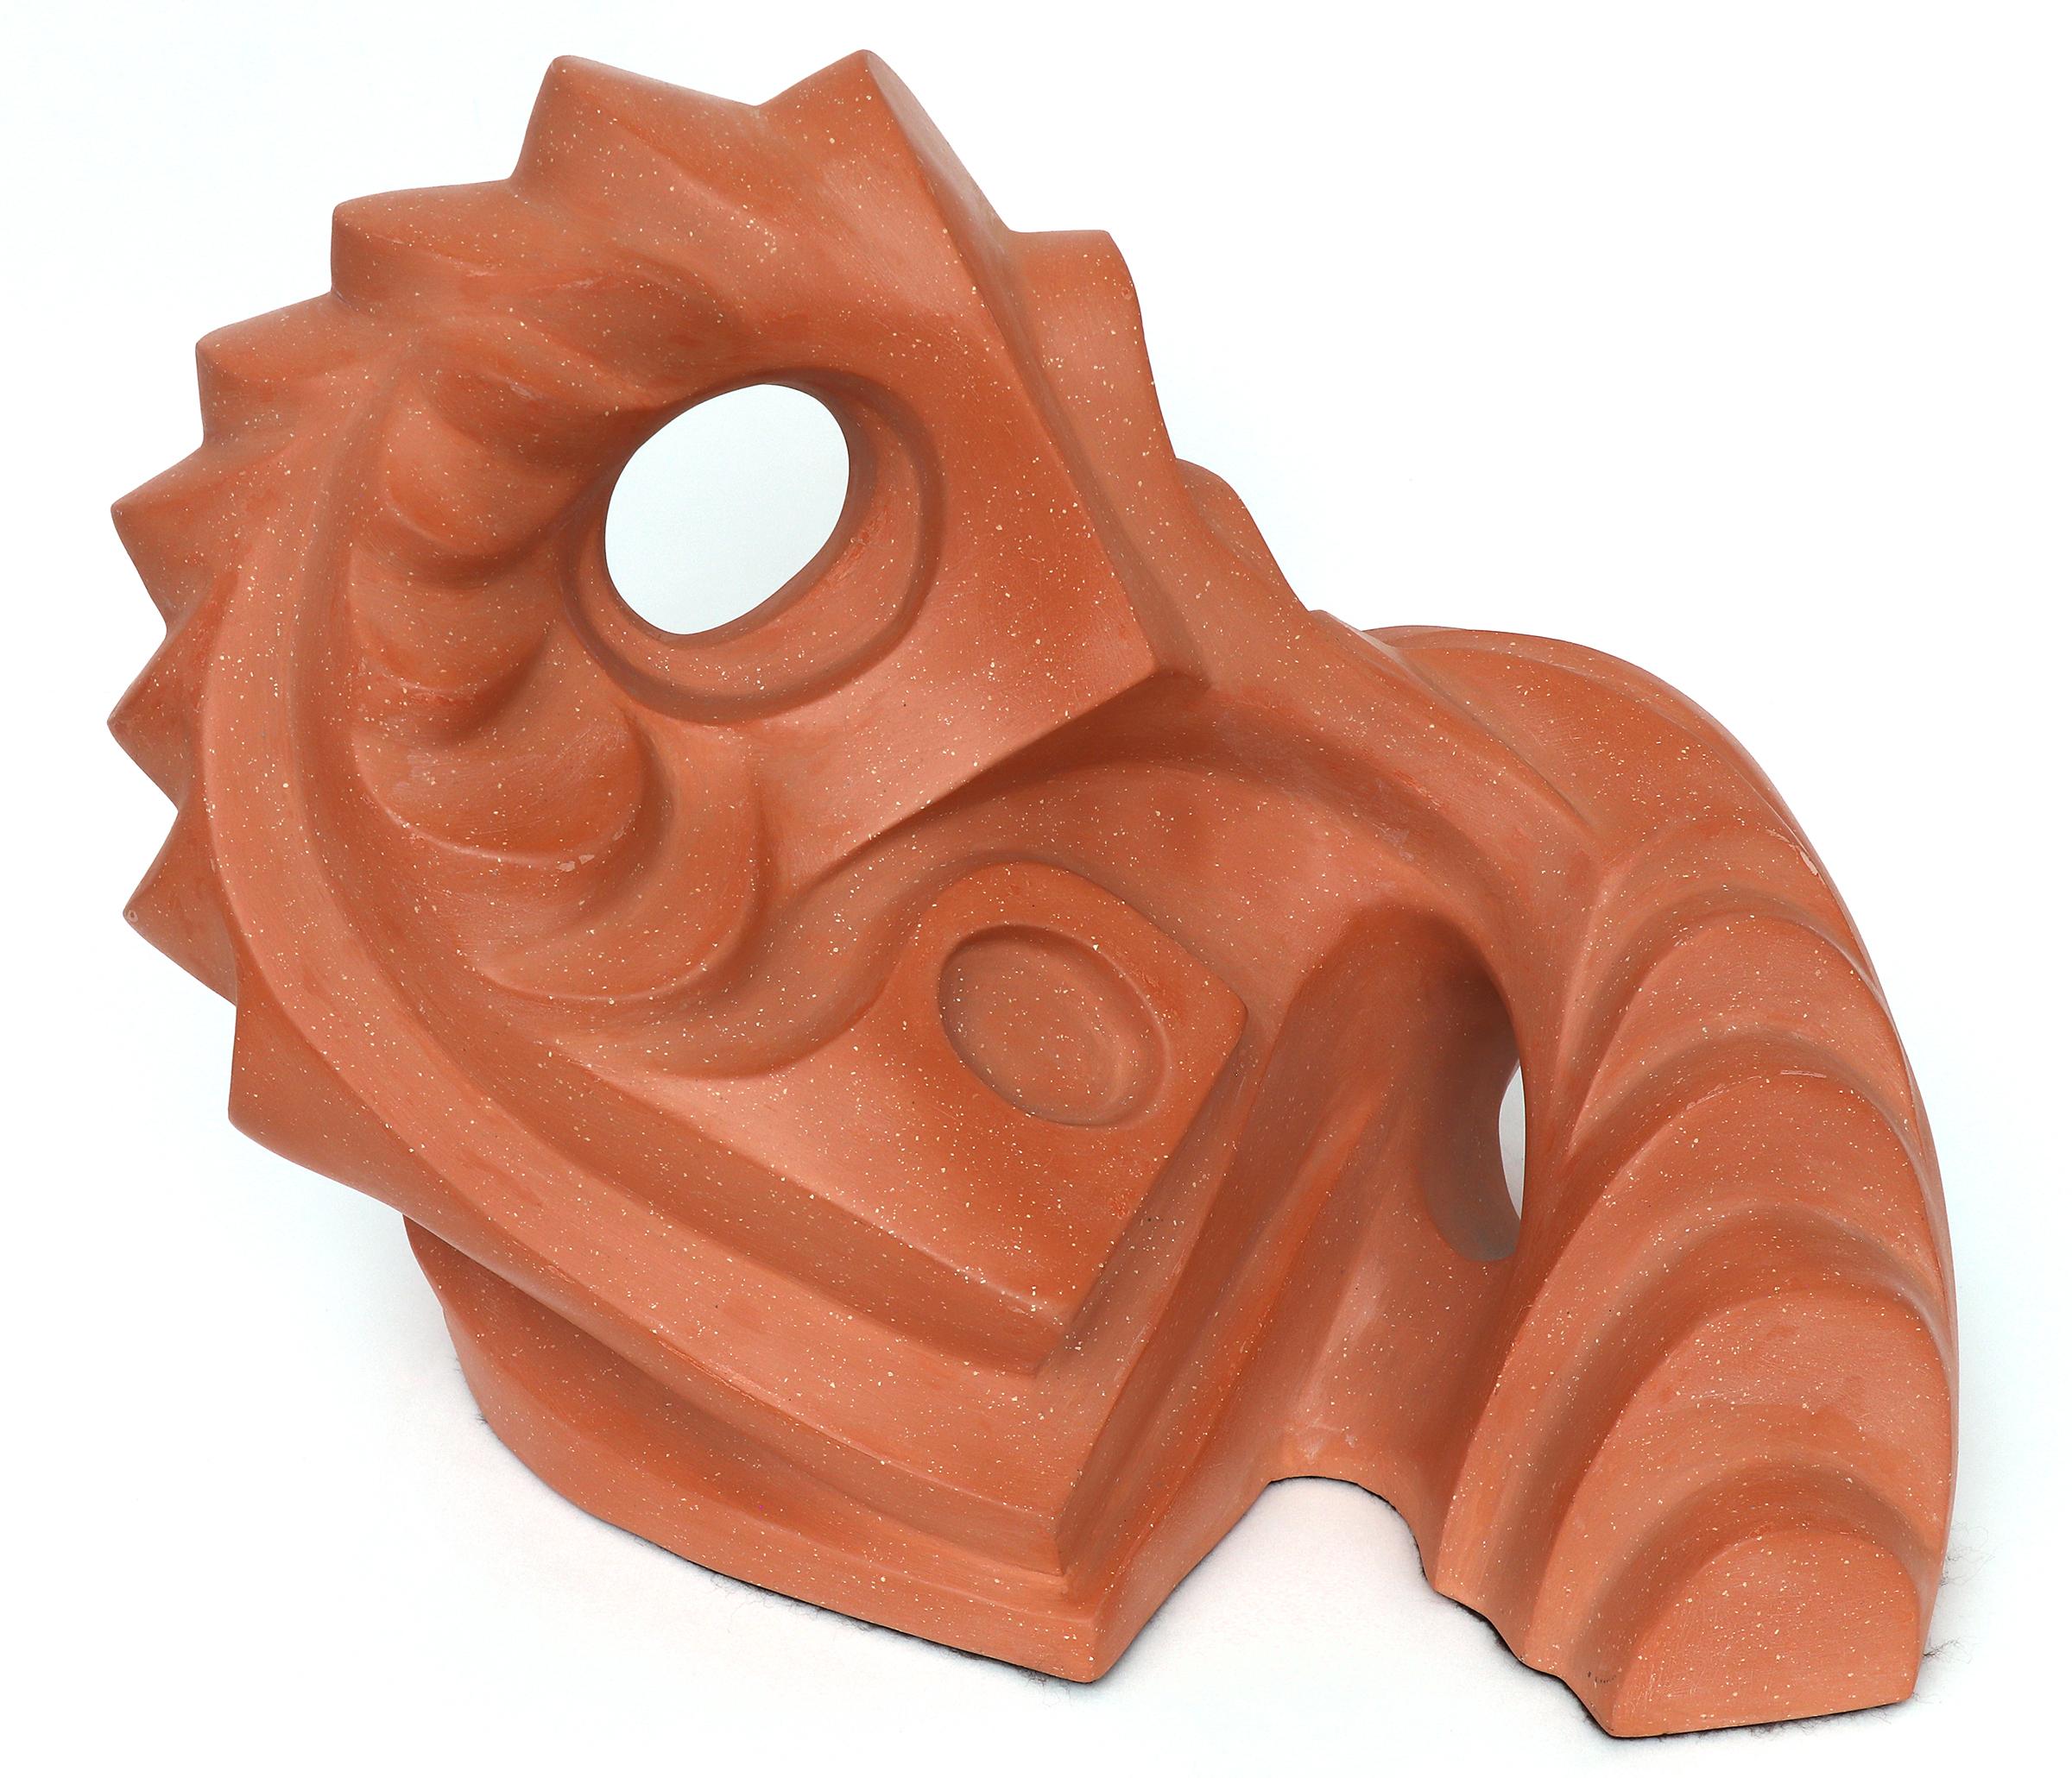 Sculpture abstraite en terre cuite de Sushe Felix (20e siècle) présentant une forme continue avec des courbes, des crêtes et de multiples trous circulaires dans toute la forme. Mesure 12 x 14 x 10 pouces. 

La sculpture est en très bon à excellent